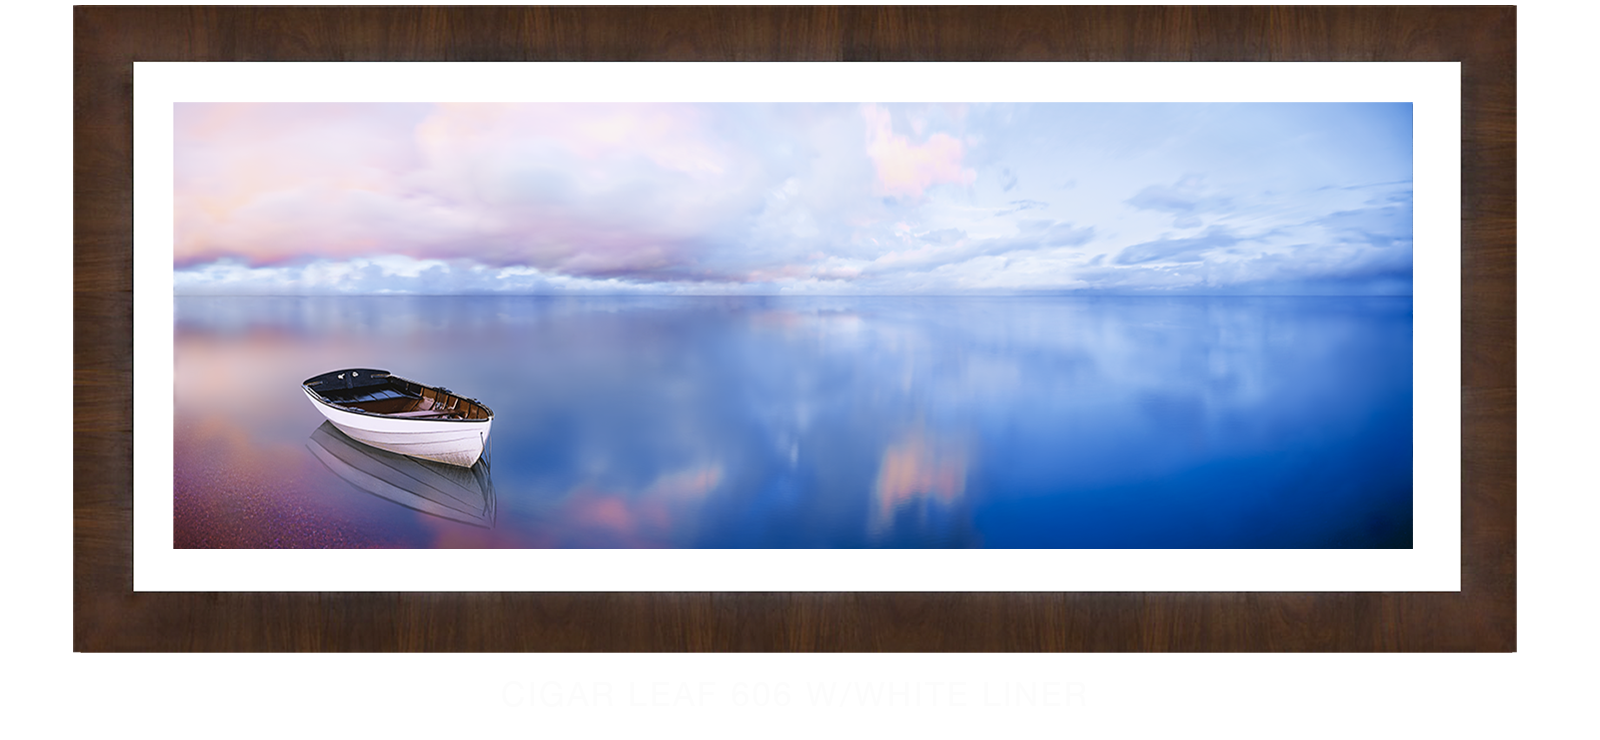 21BLUELAKEBOAT Cigar Leaf 606 w_Wht Liner T